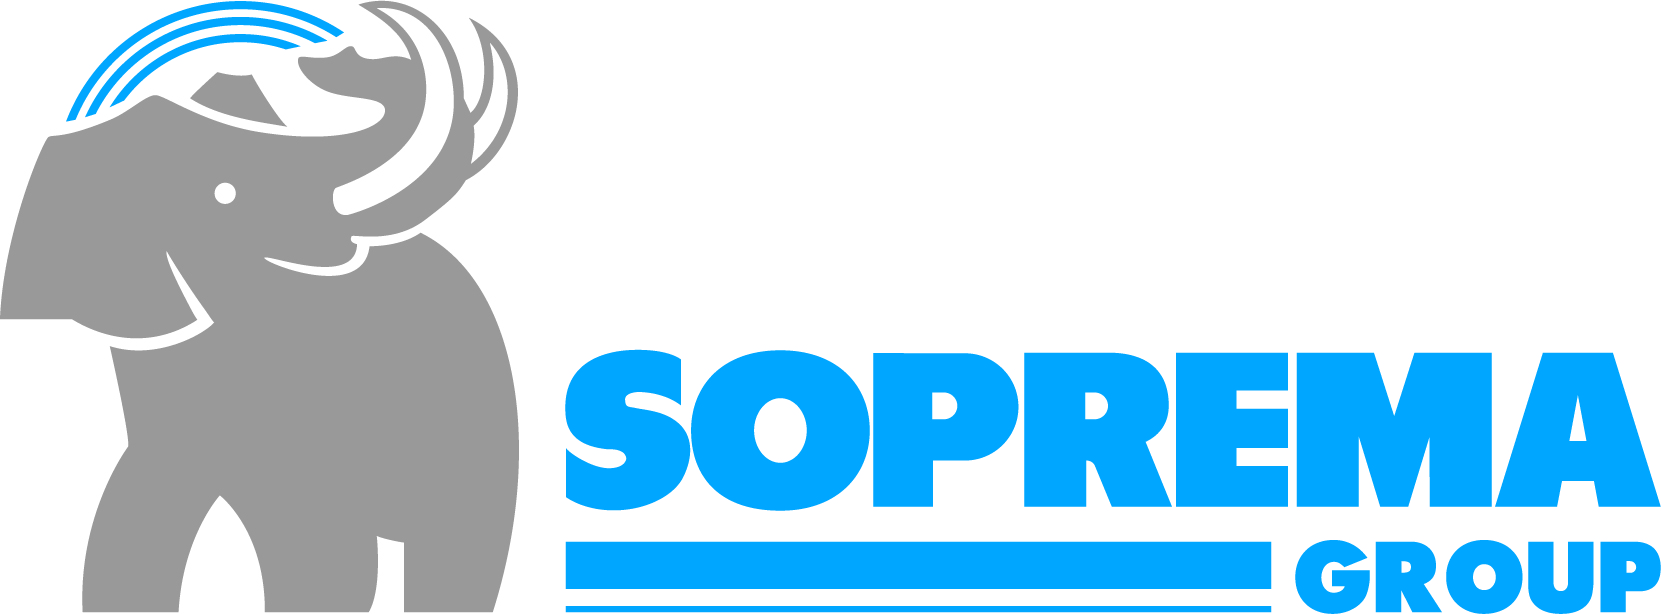 logo-SOPREMA